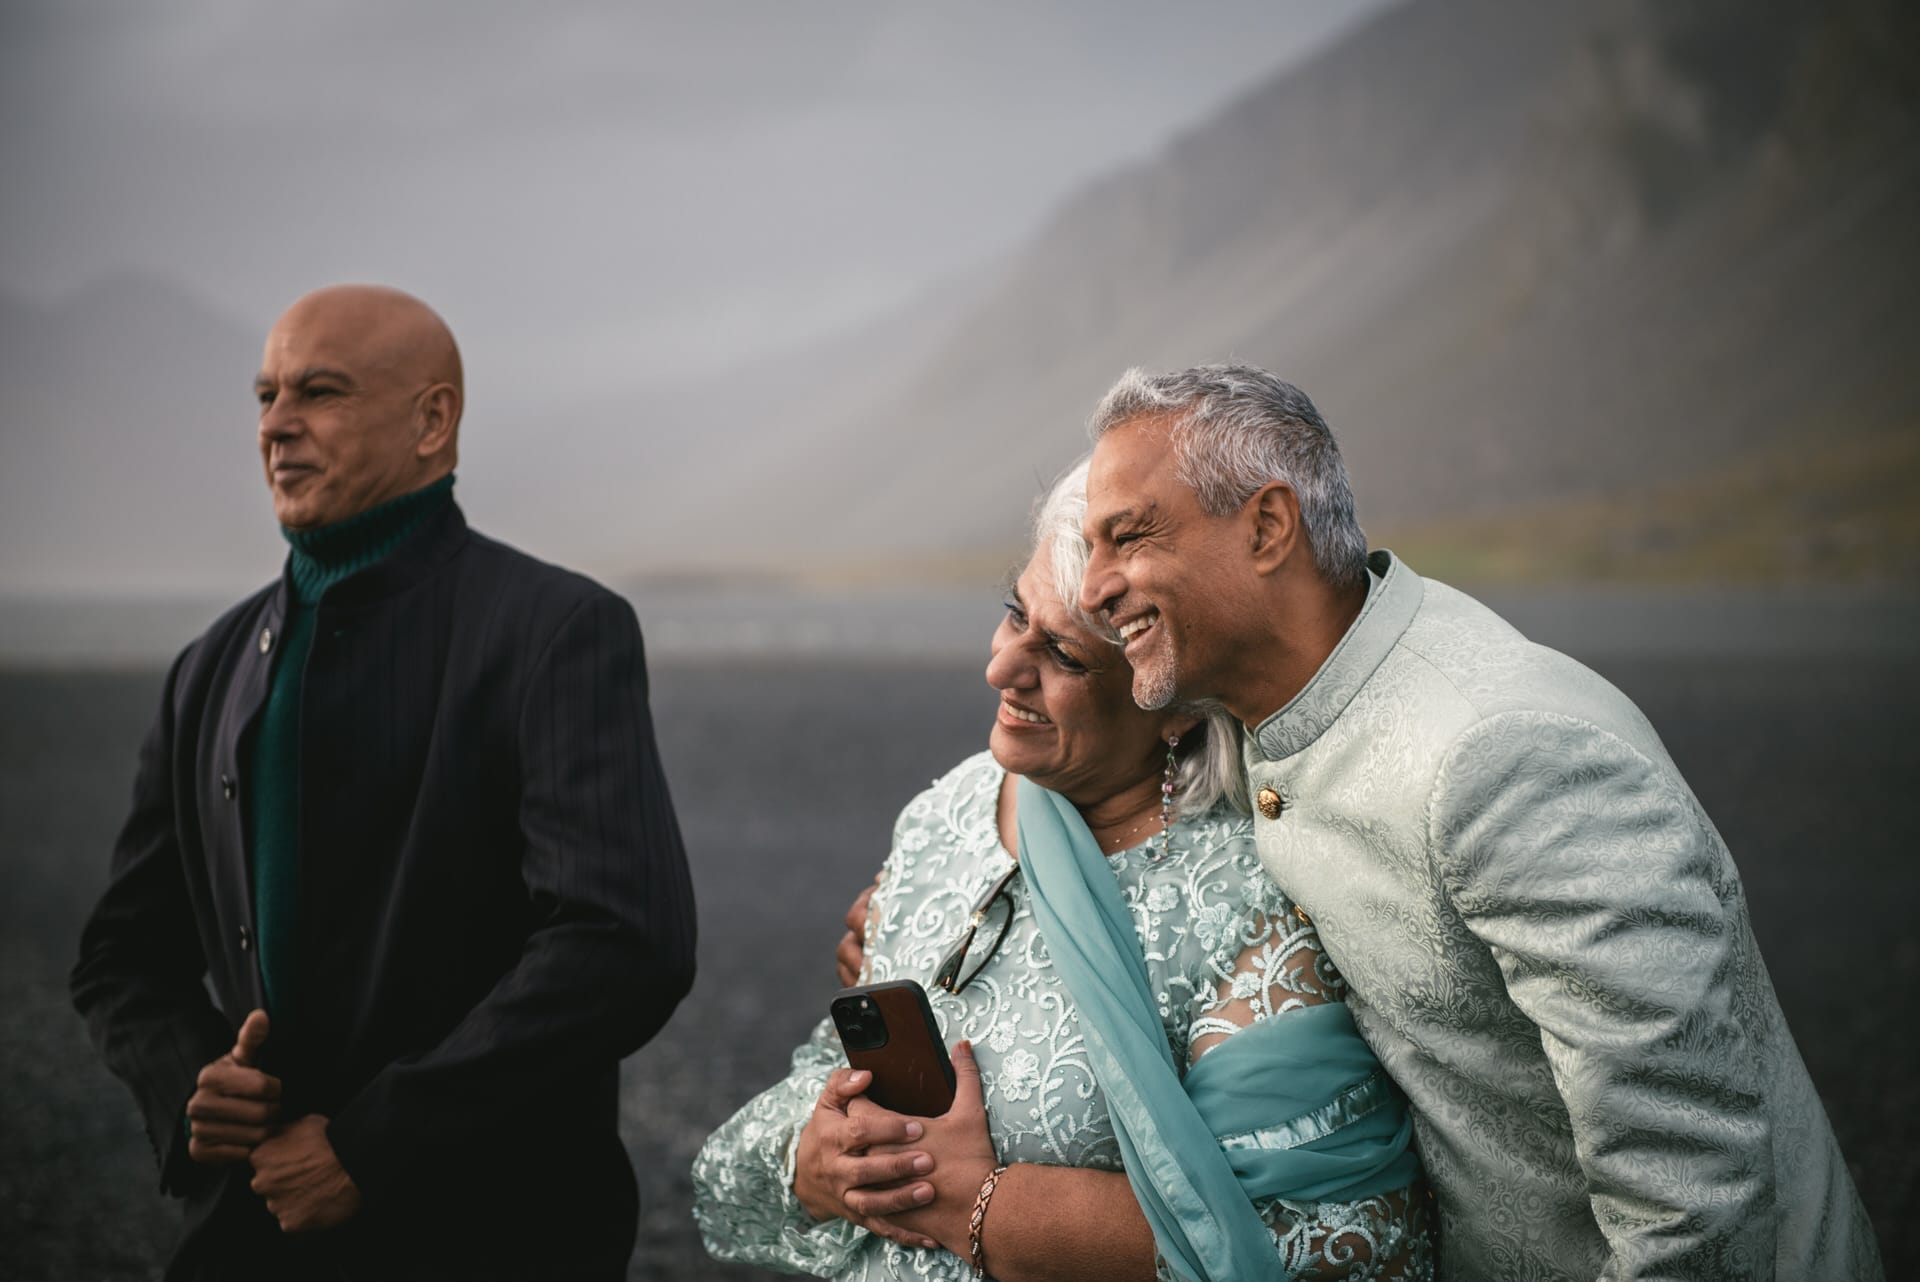 A joyful elopement in East Iceland